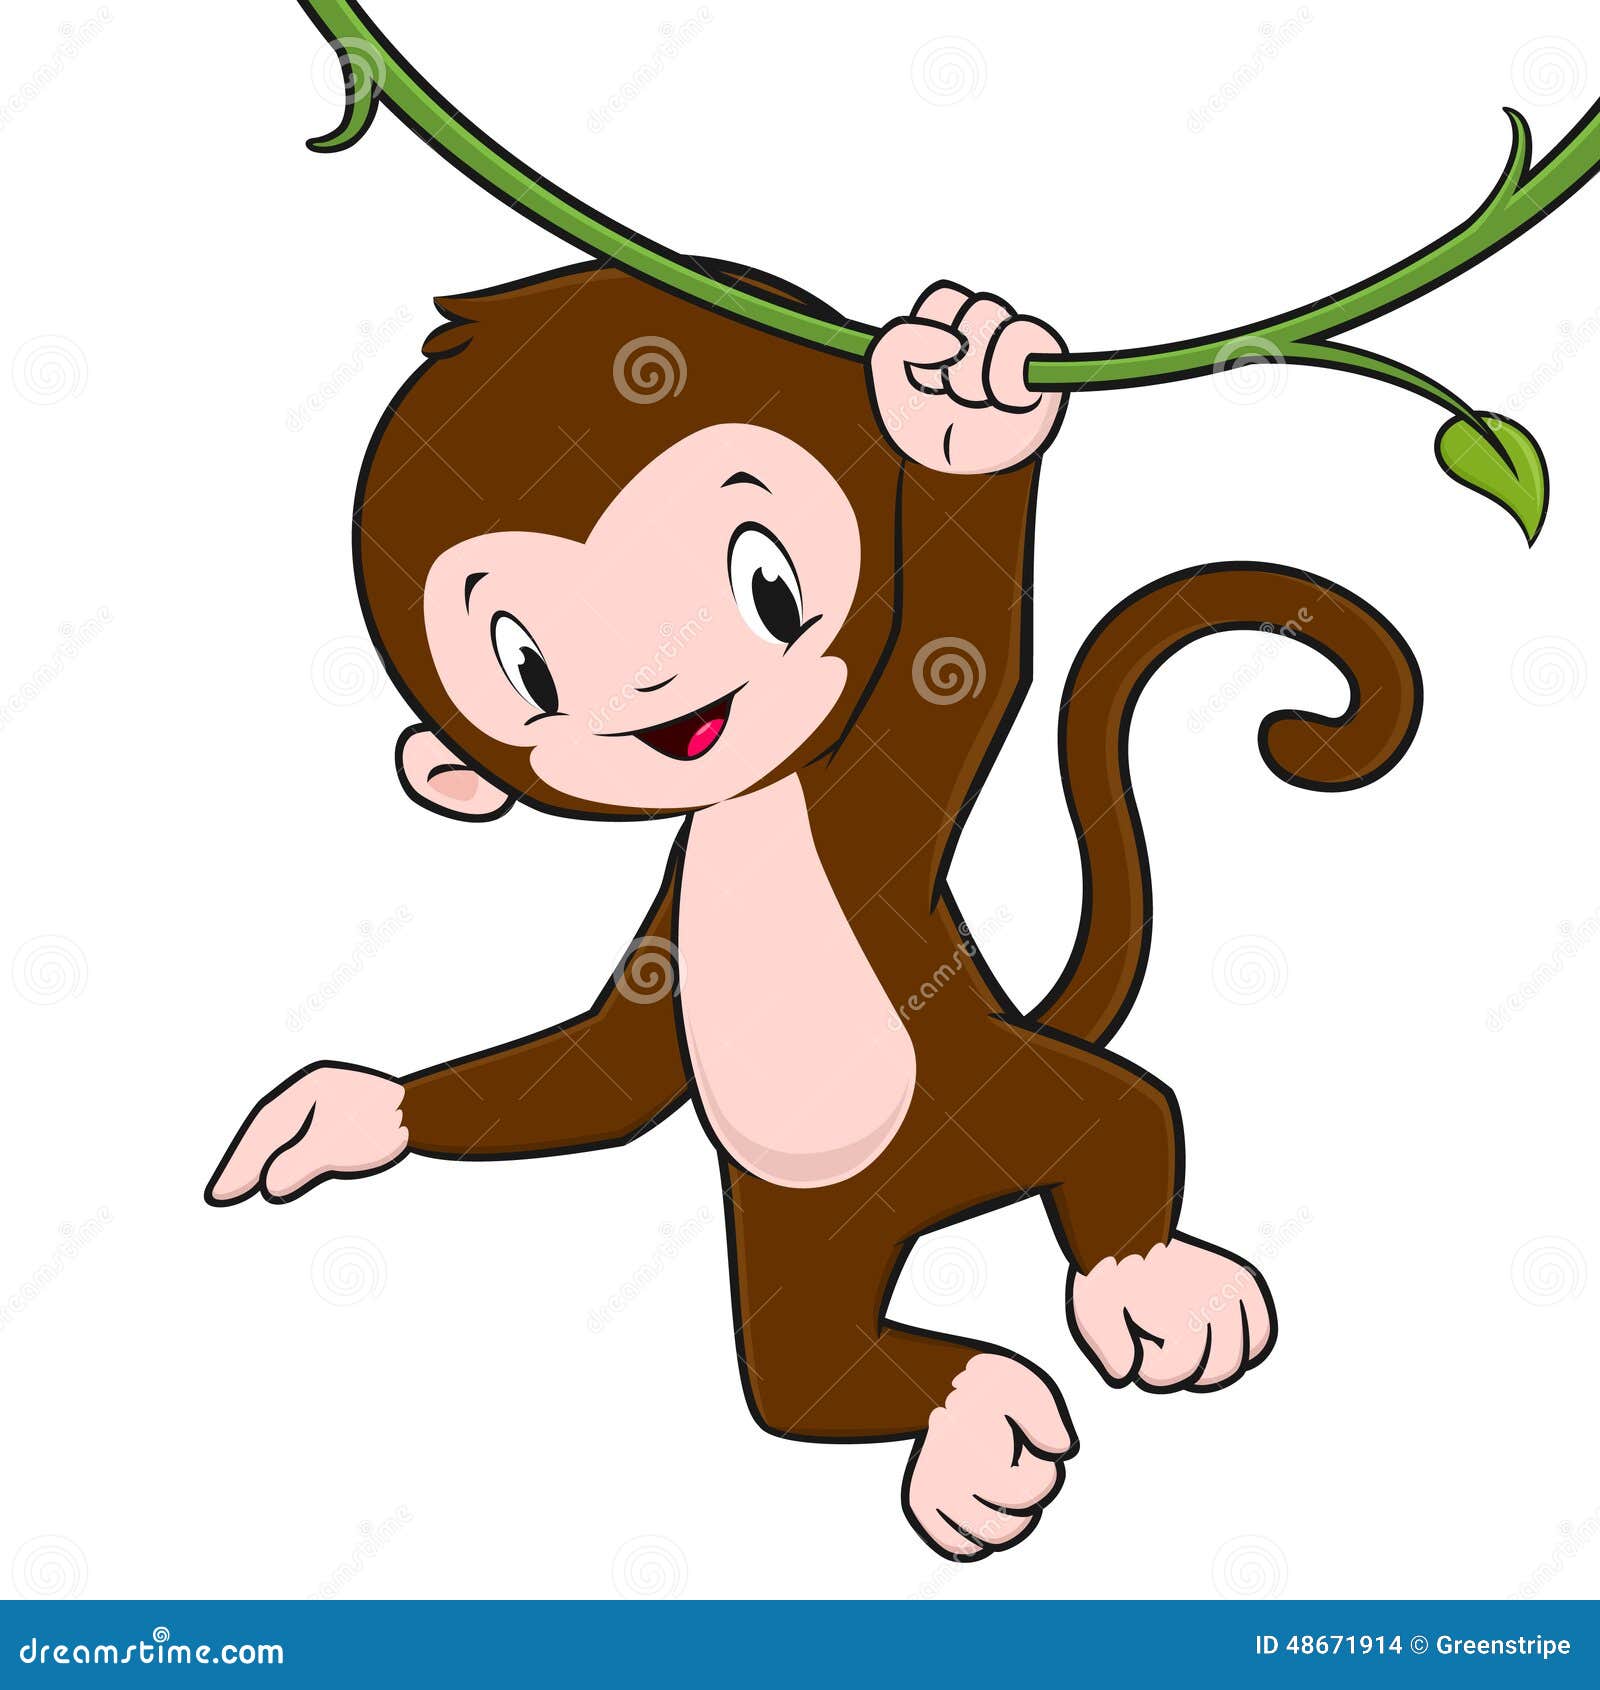 monkey vine clipart - photo #15